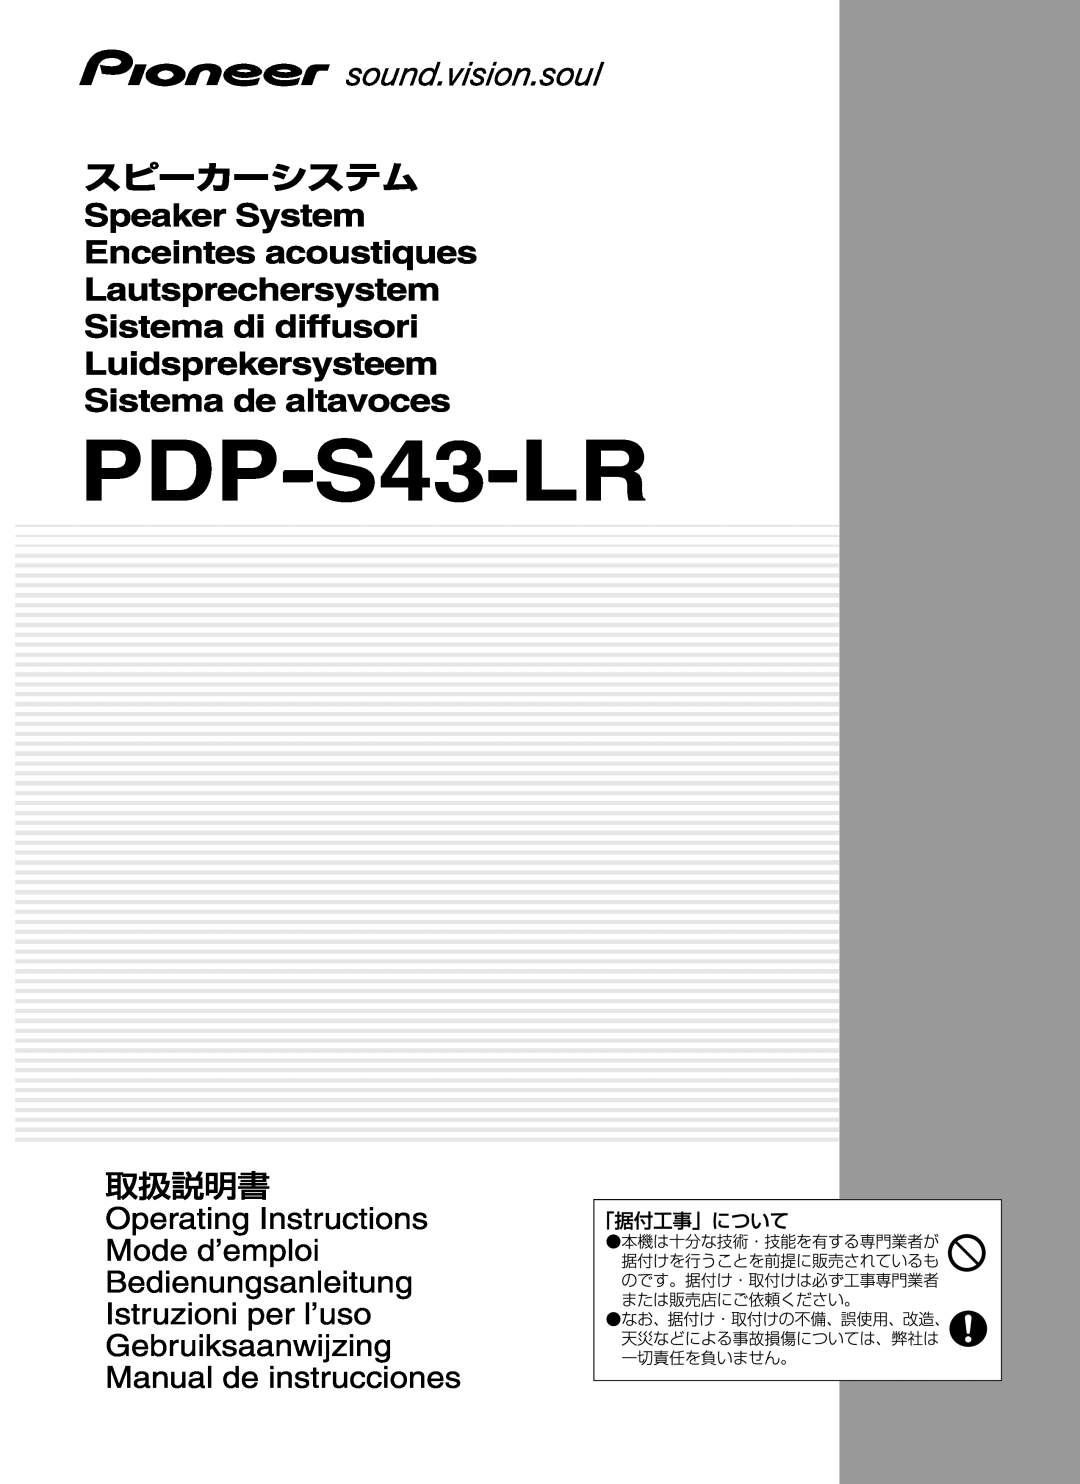 Pioneer PDP-S43-LR manual 